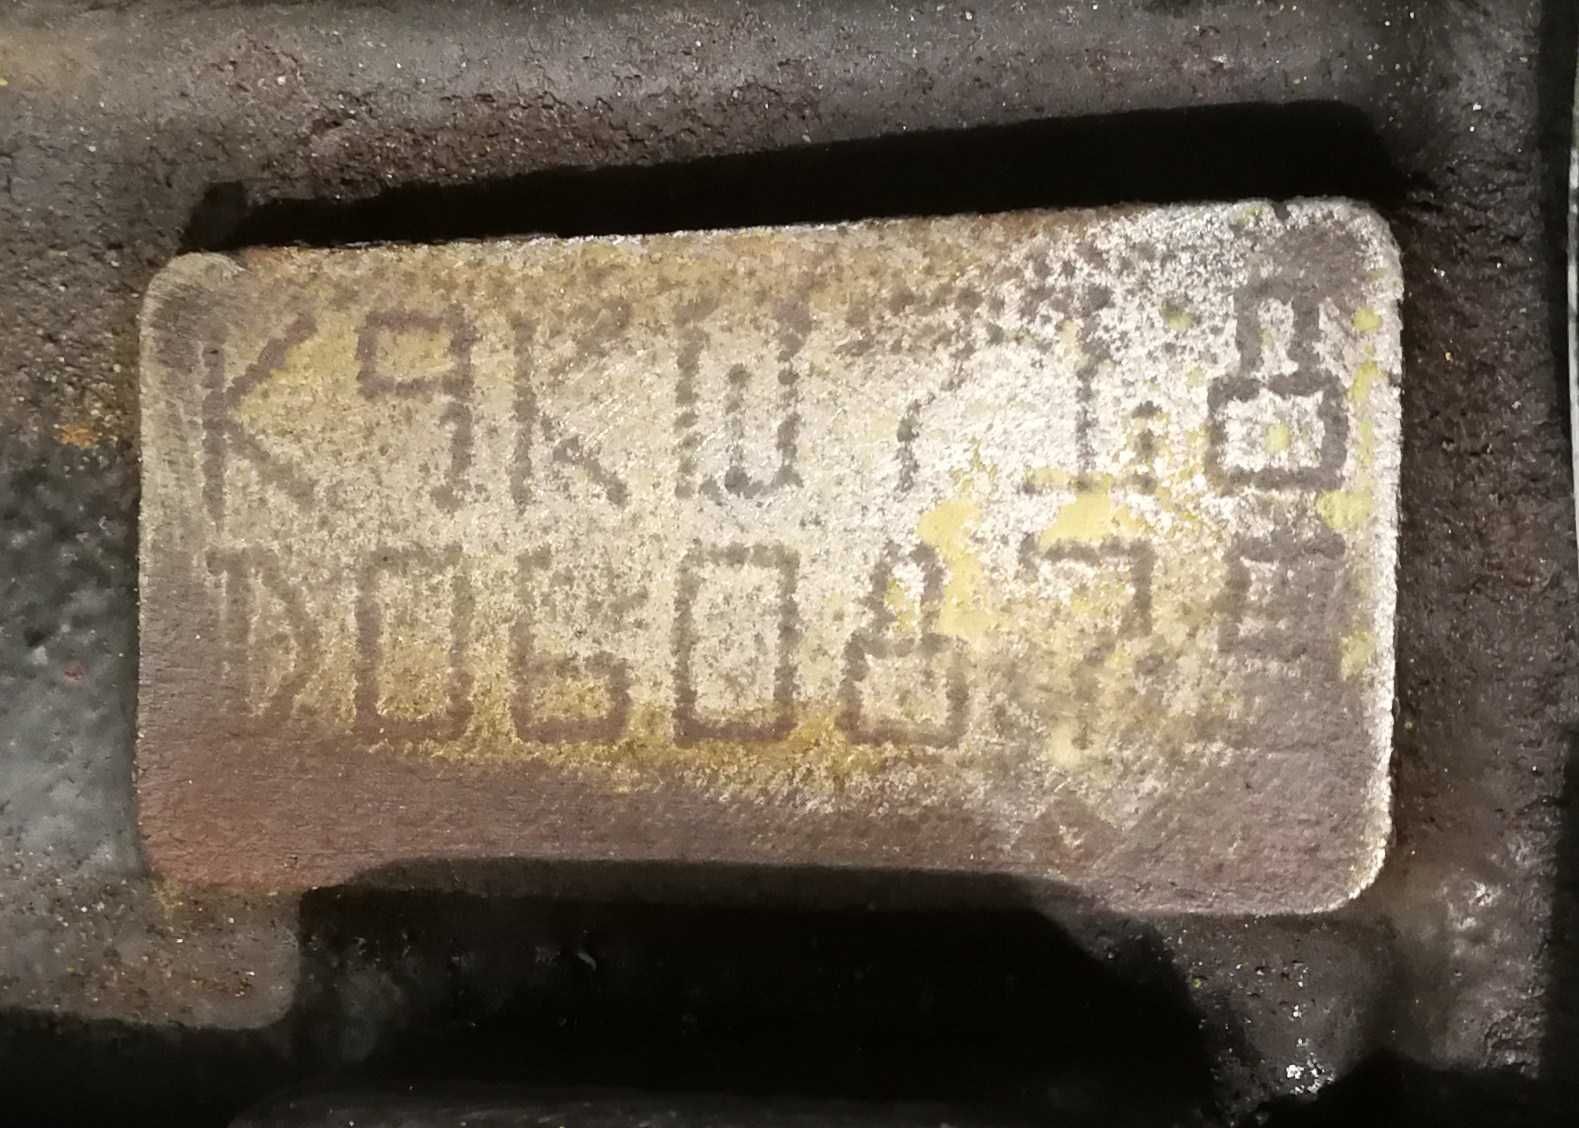 motor renault kangoo clio k9k718